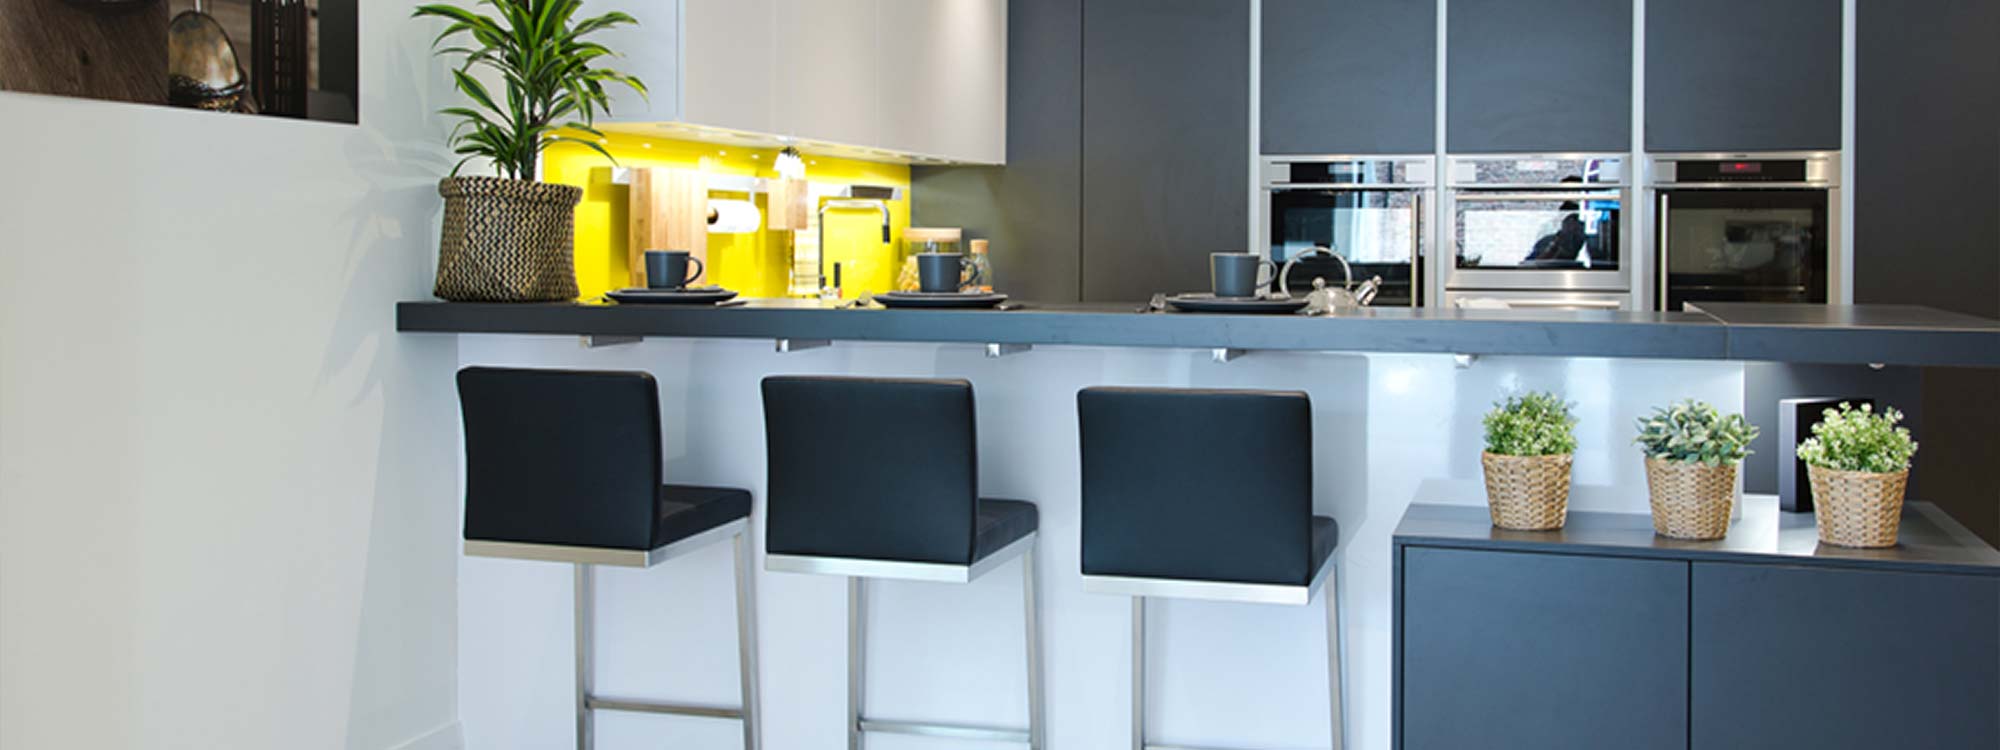 kitchen design lancashire